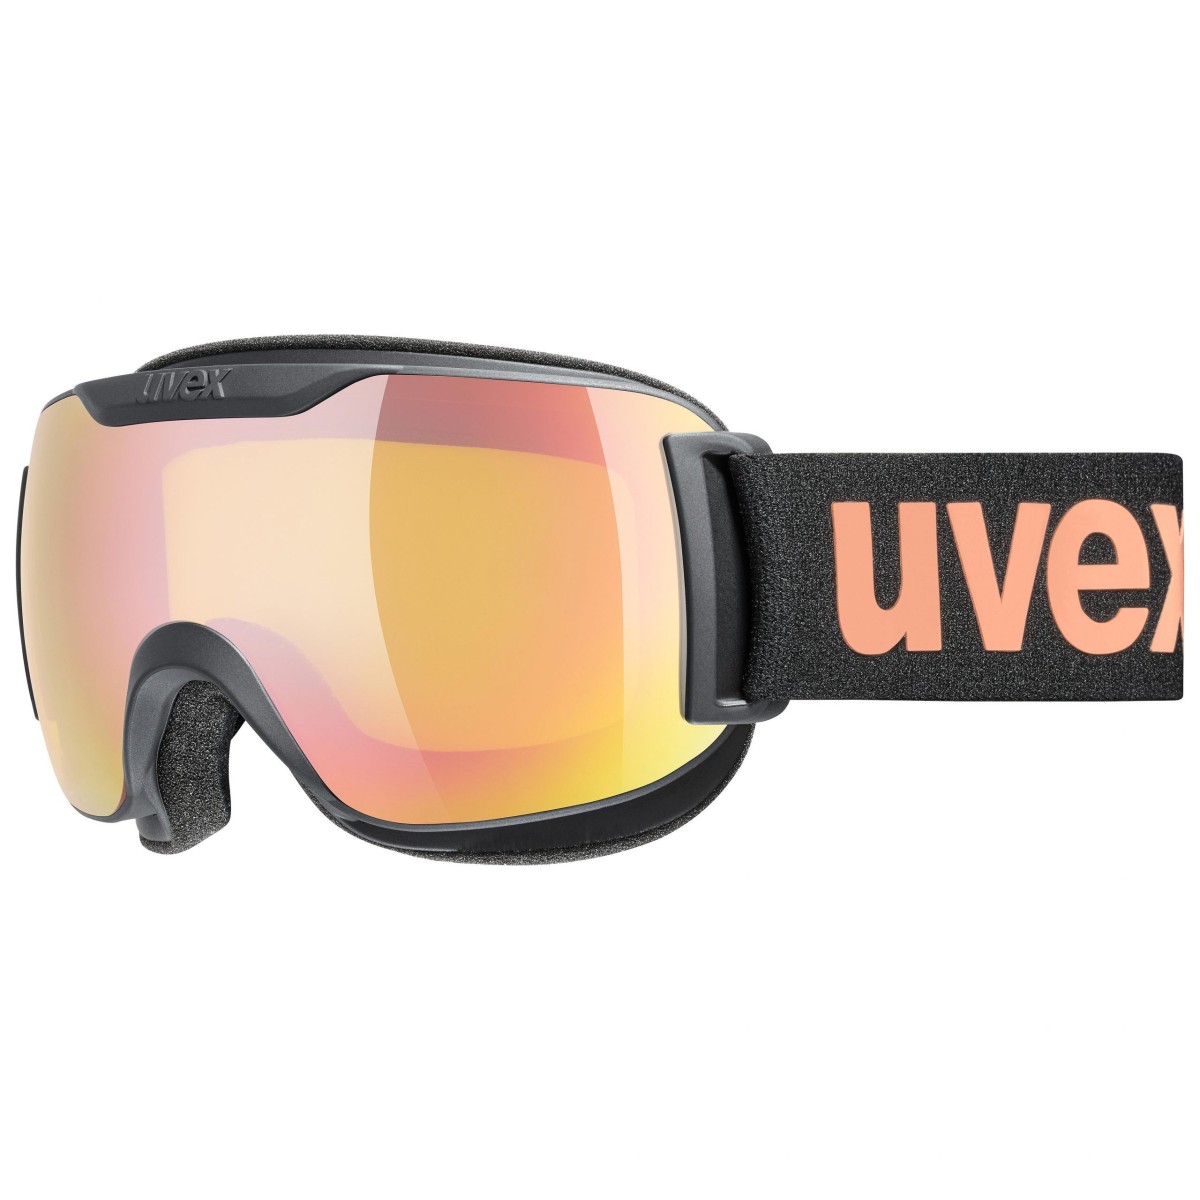 UVEX slēpošanas brilles DOWNHILL 2000 S CV